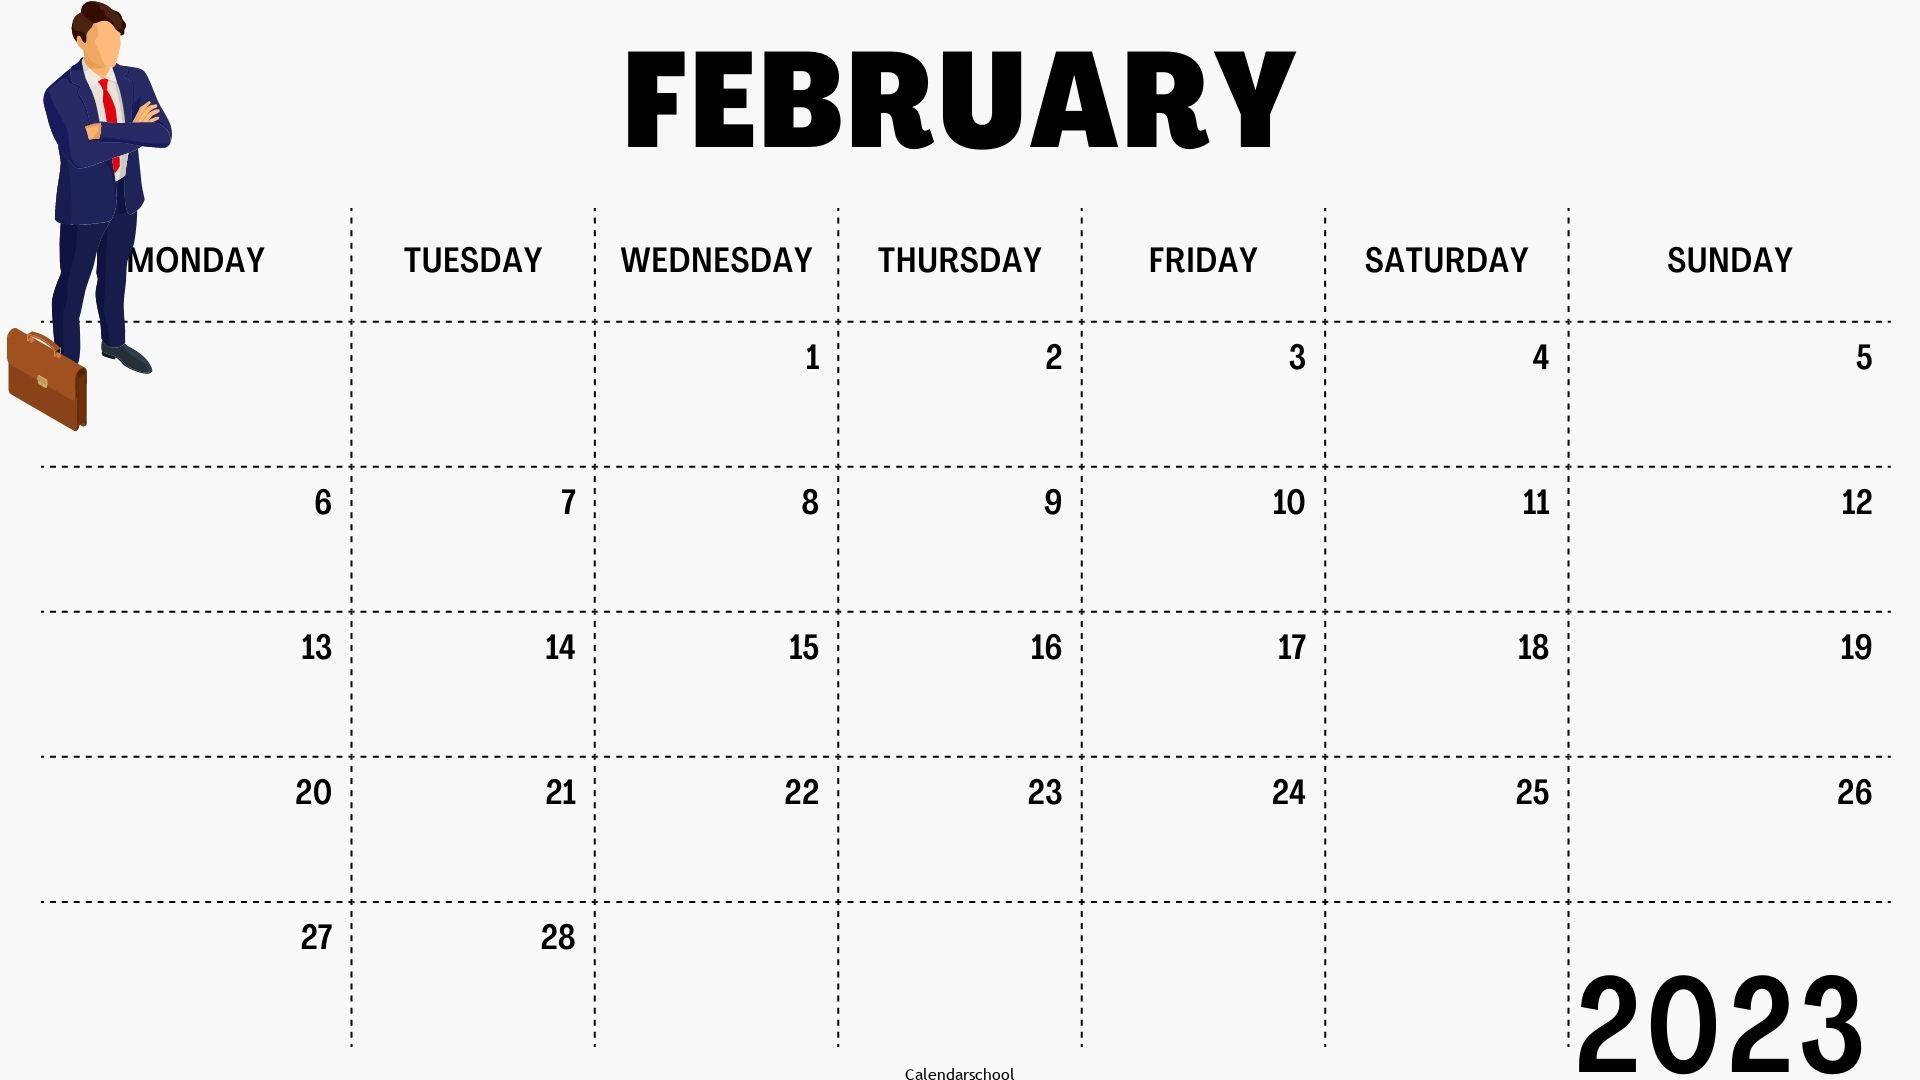 February Calendar 2023 Quarterly